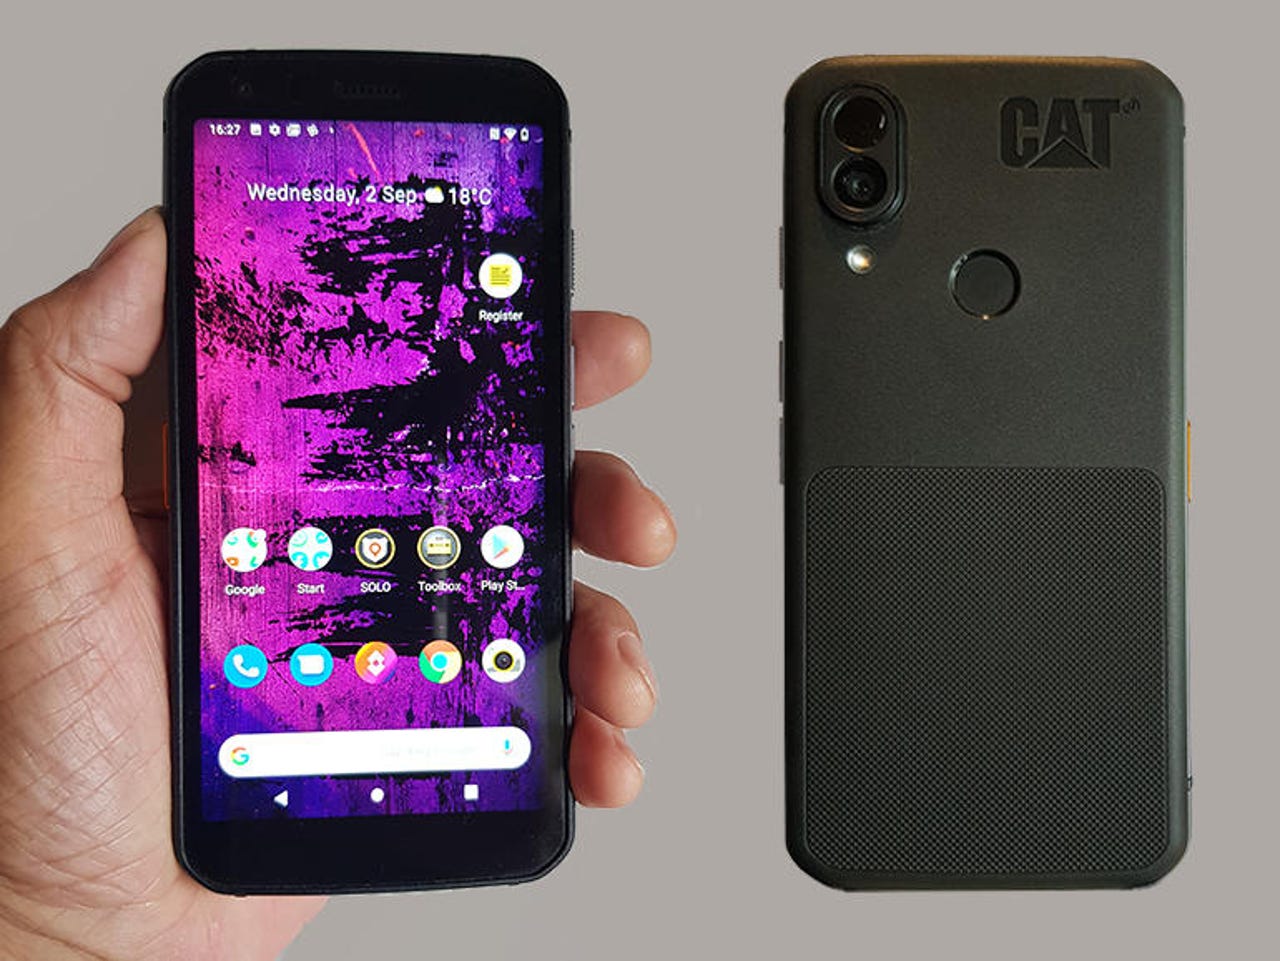 Cat S62 Smartphone